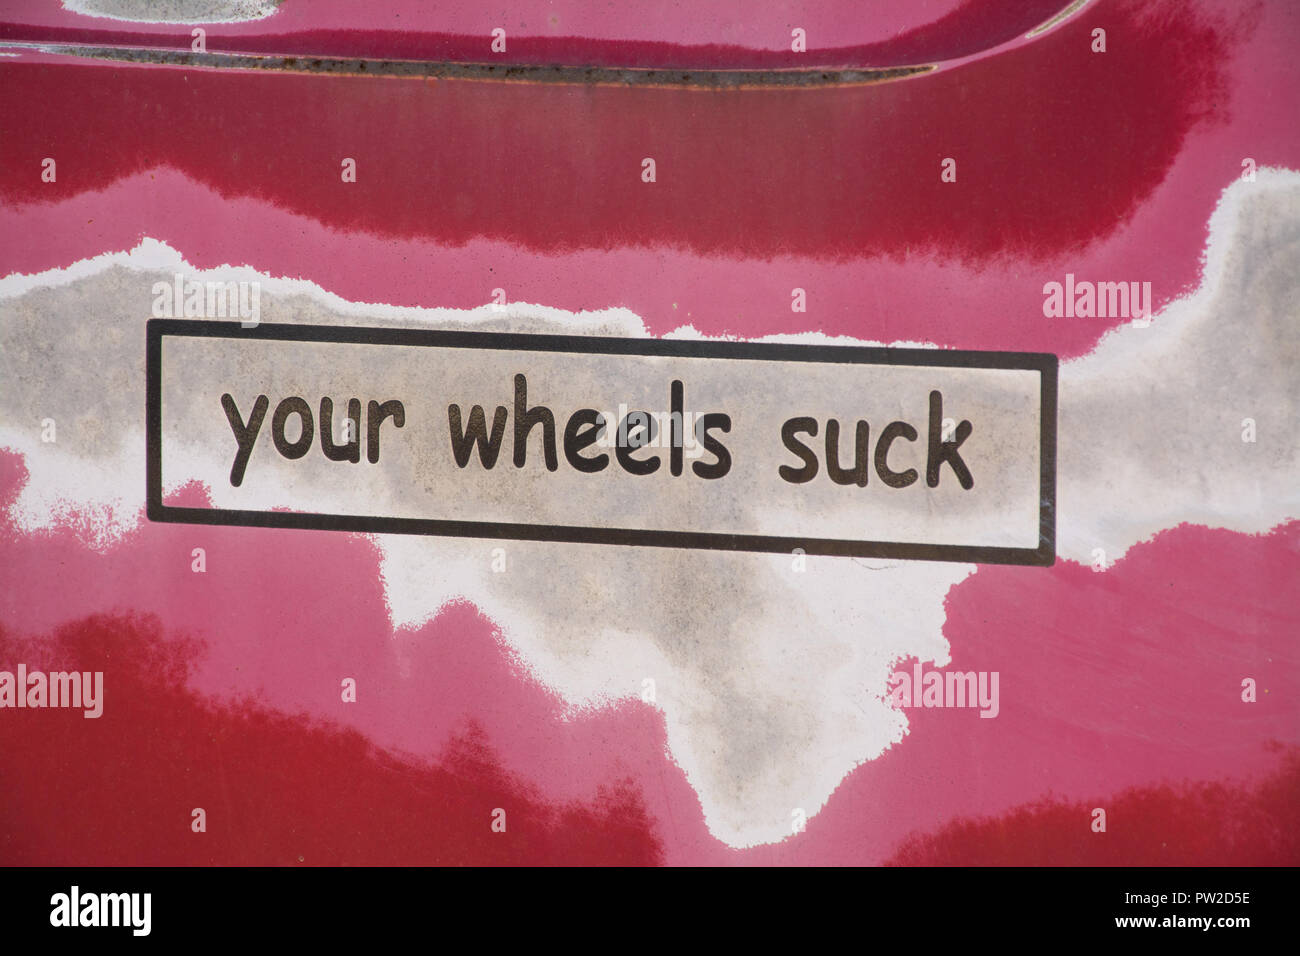 Amusant humour funny car sticker lecture vos roues sucer un van de couleur Banque D'Images